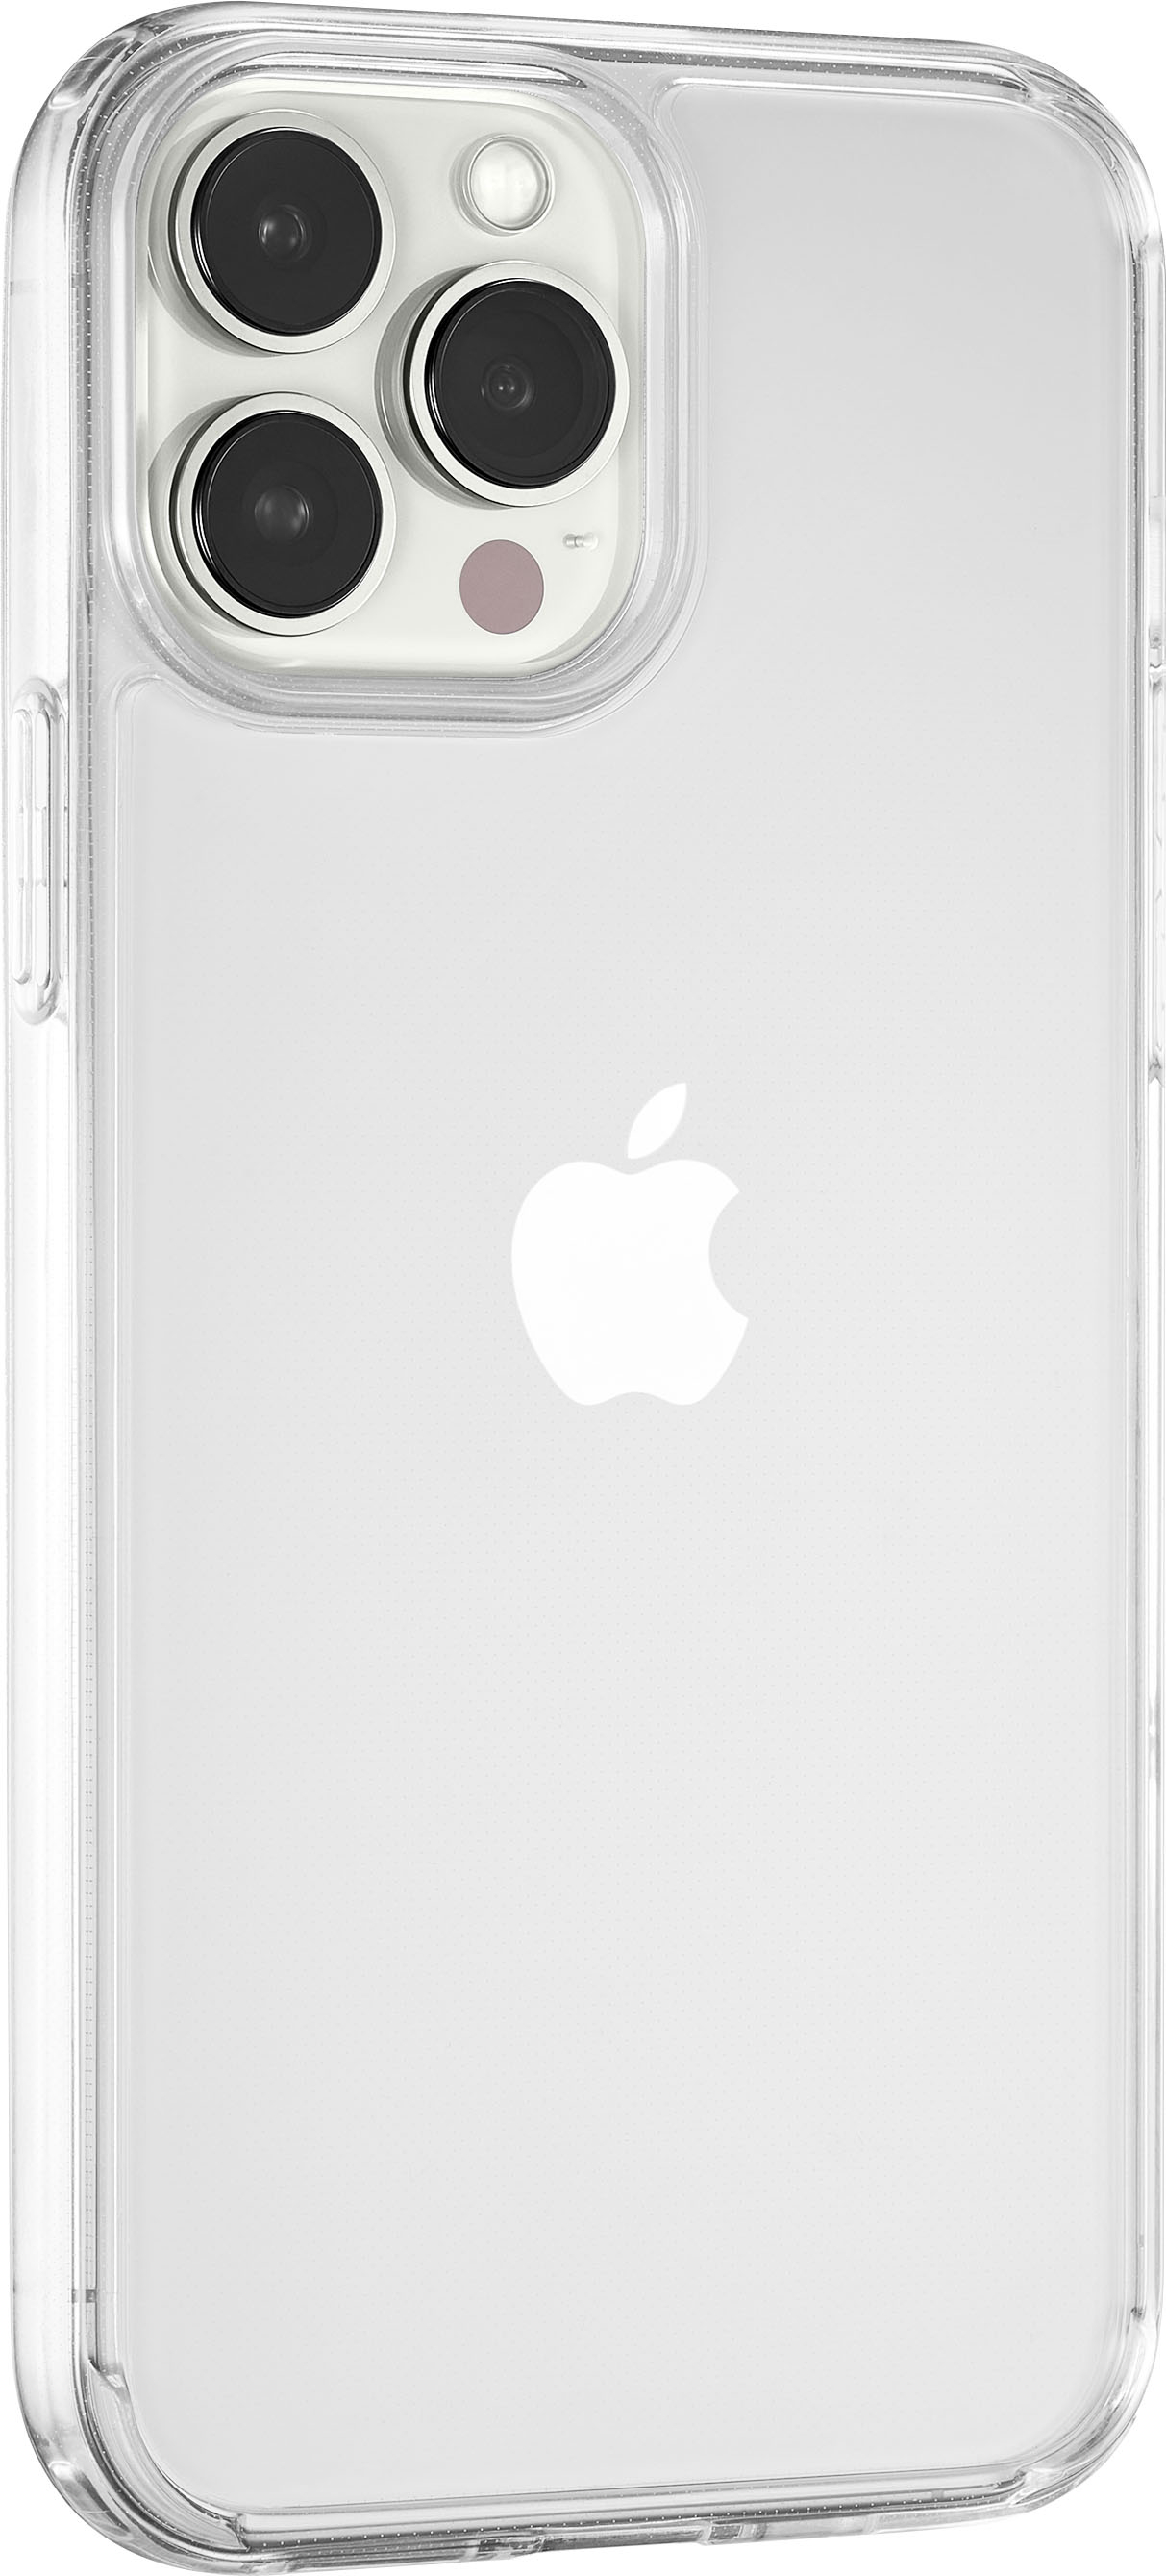 iPhone 13 Pro Max Case | Air-S